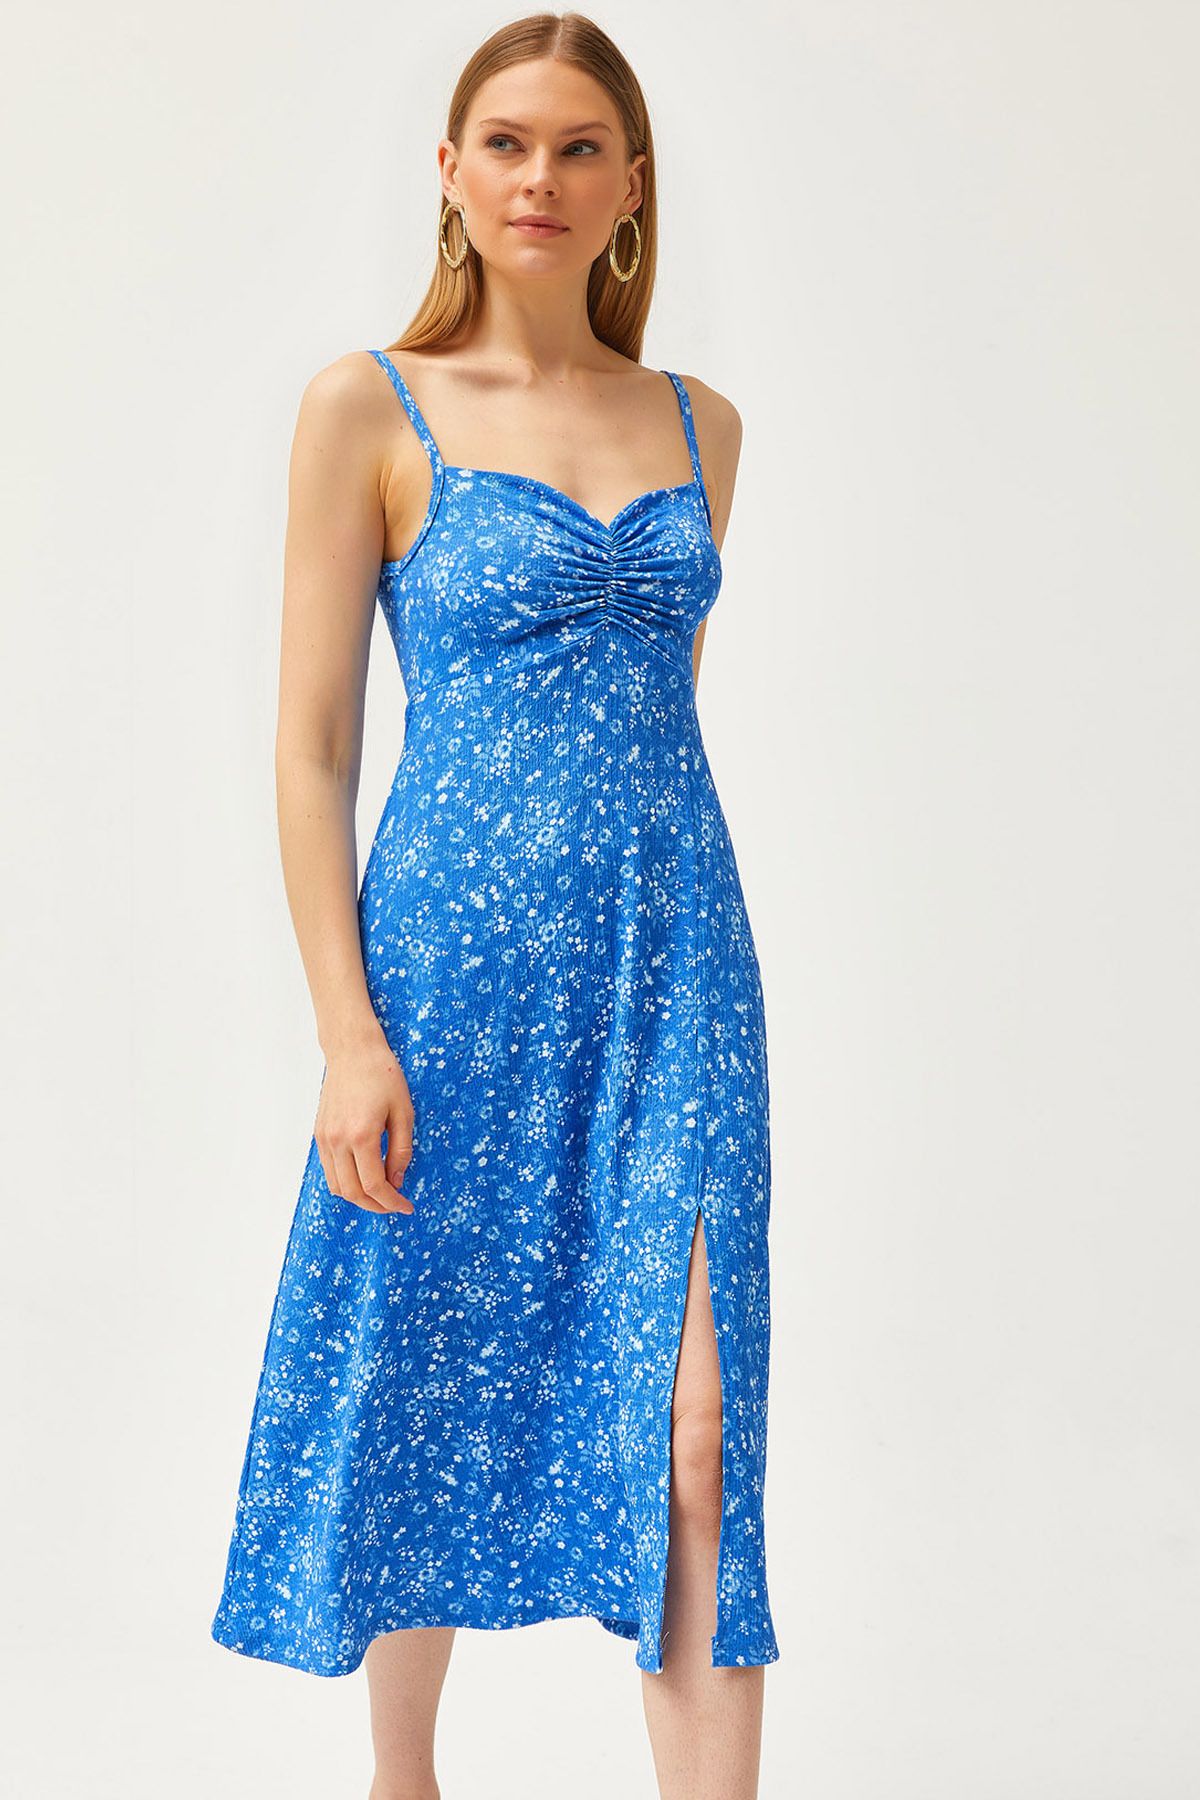 Olalook Kadın Saks Mavi Askılı Önü Büzgülü Örme Elbise ELB-19002104